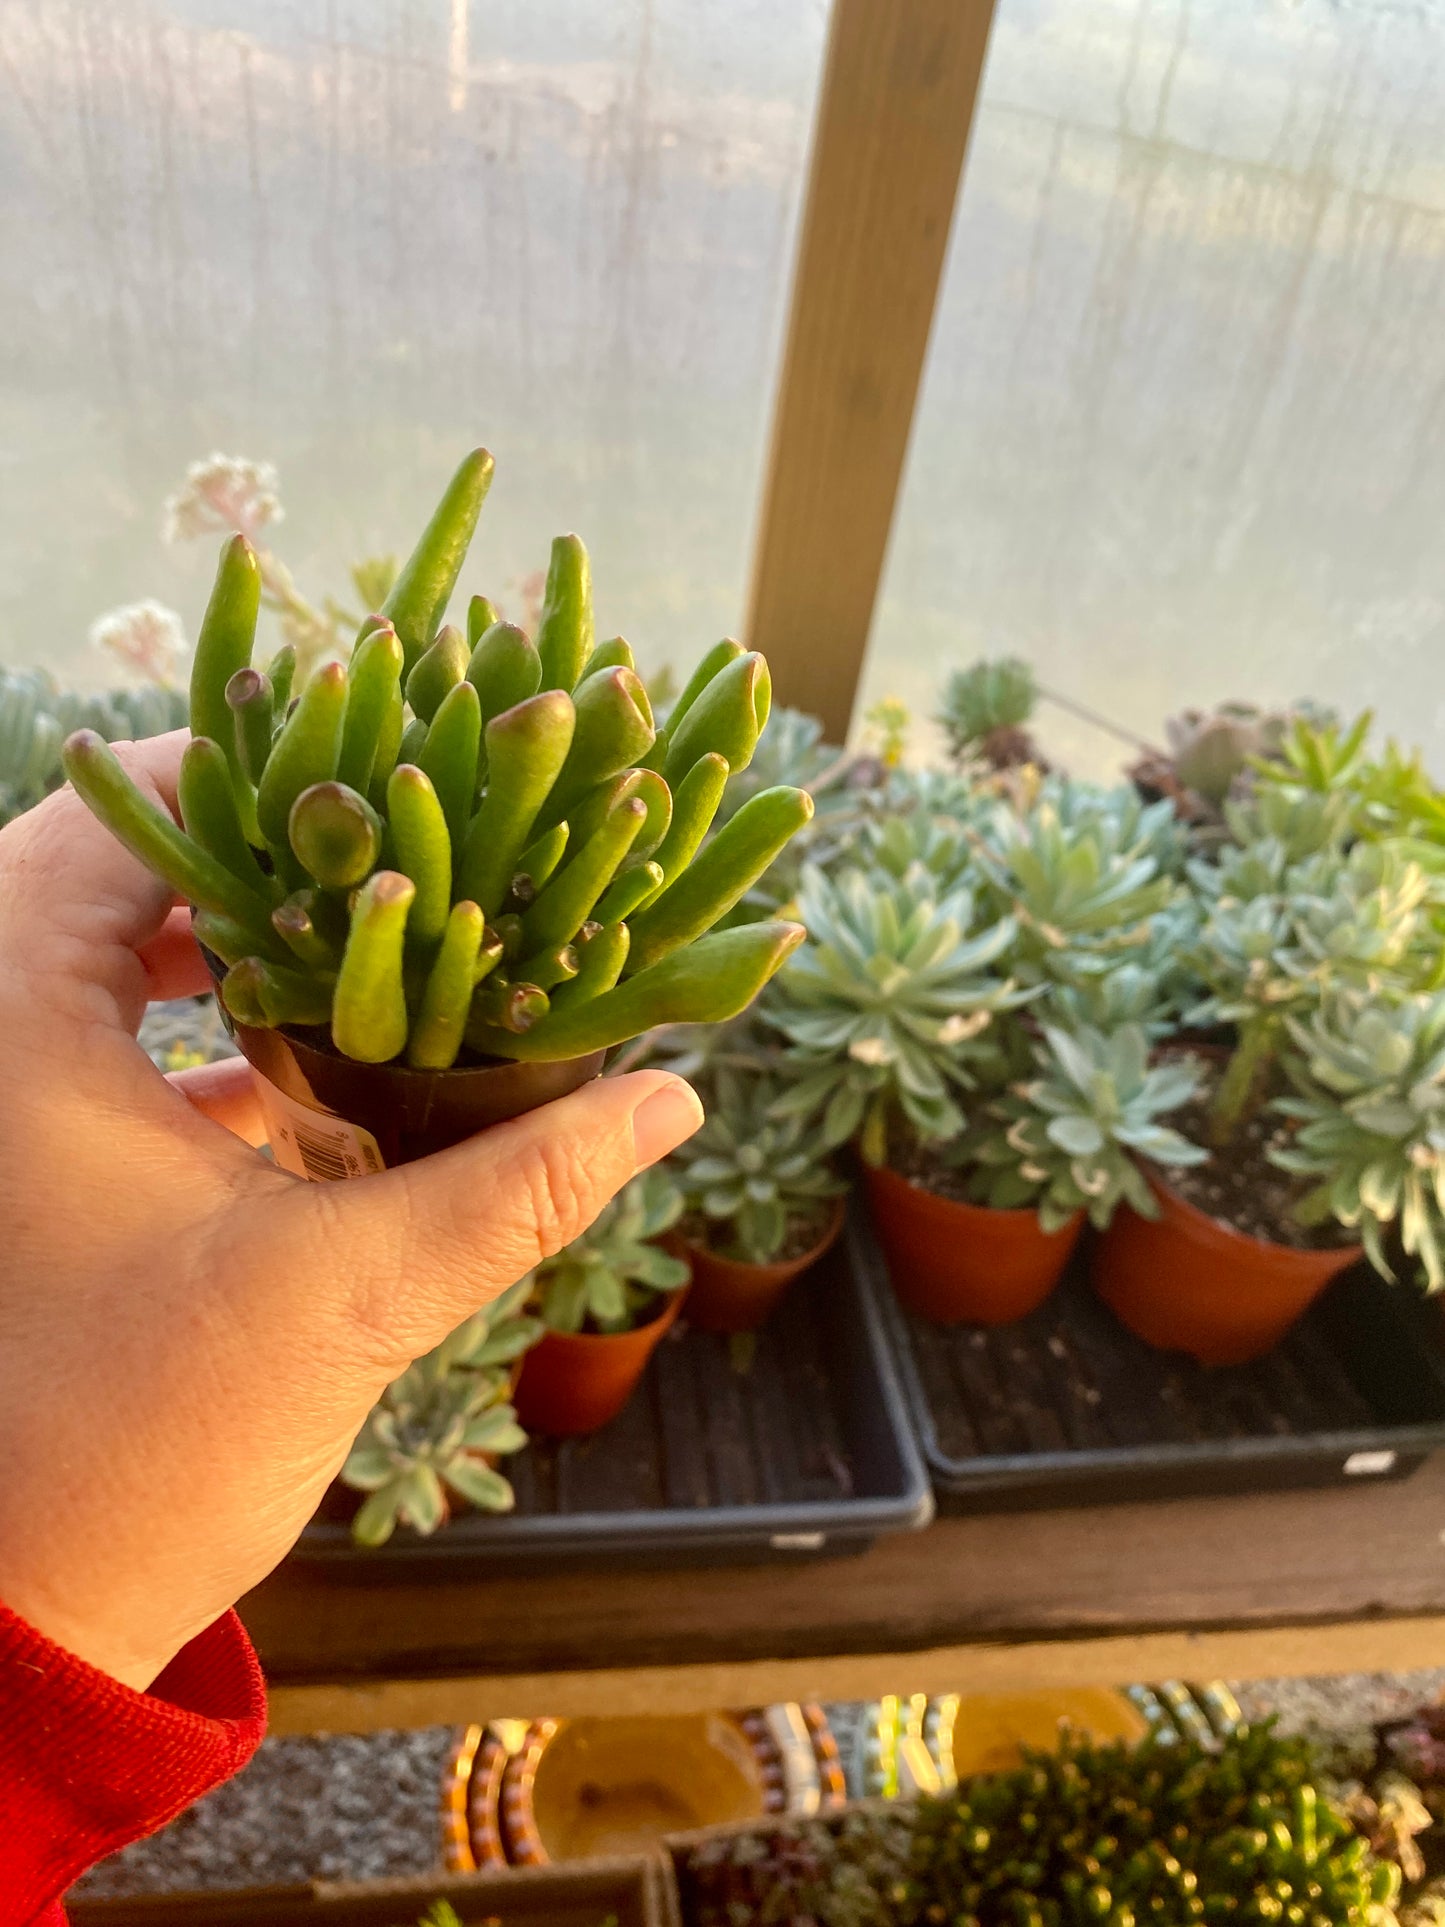 Succulent Ogre Ear Crassula ovata Gollum Jade 2.5” Pot Live Plant